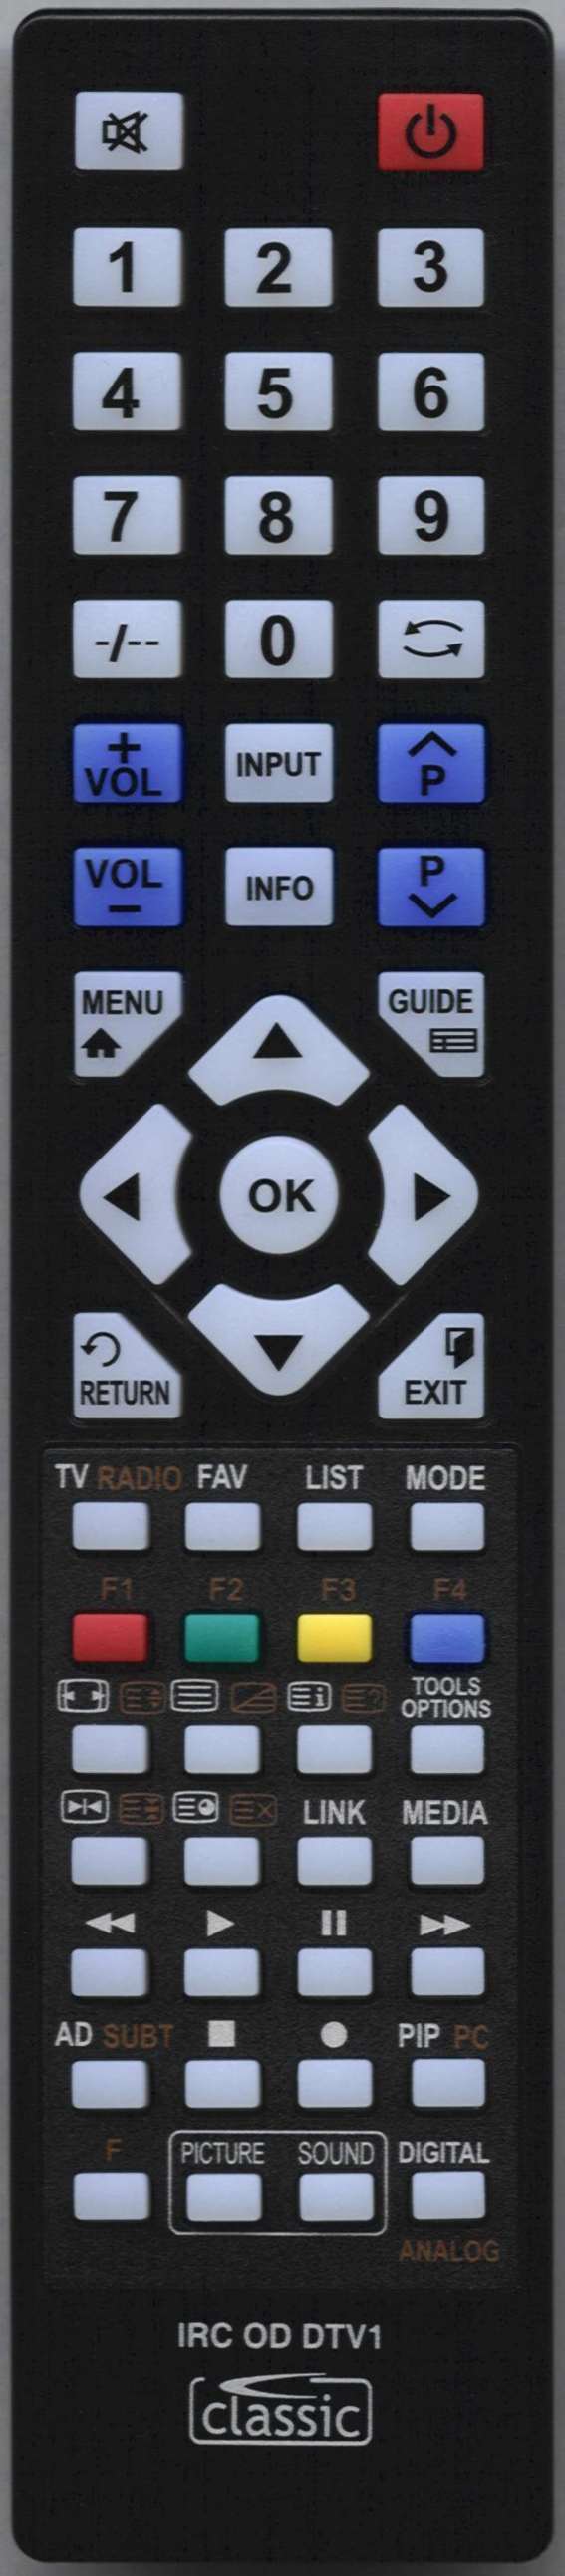 LG AKB73715679 Remote Control Alternative